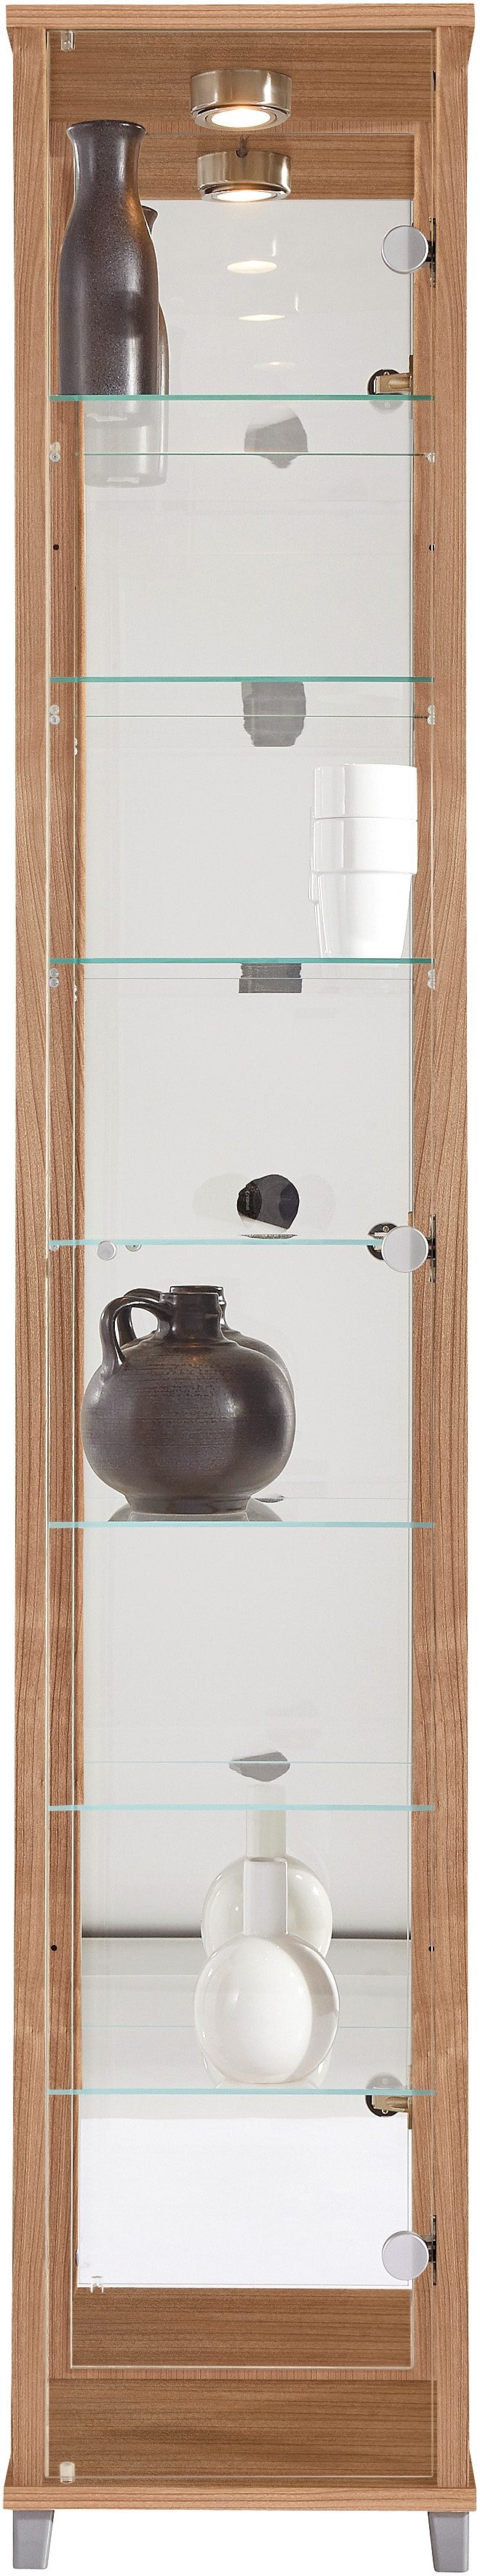 Kasten  vitrinekasten Vitrinekast met spiegelachterwand  7 glasplateaus 297900